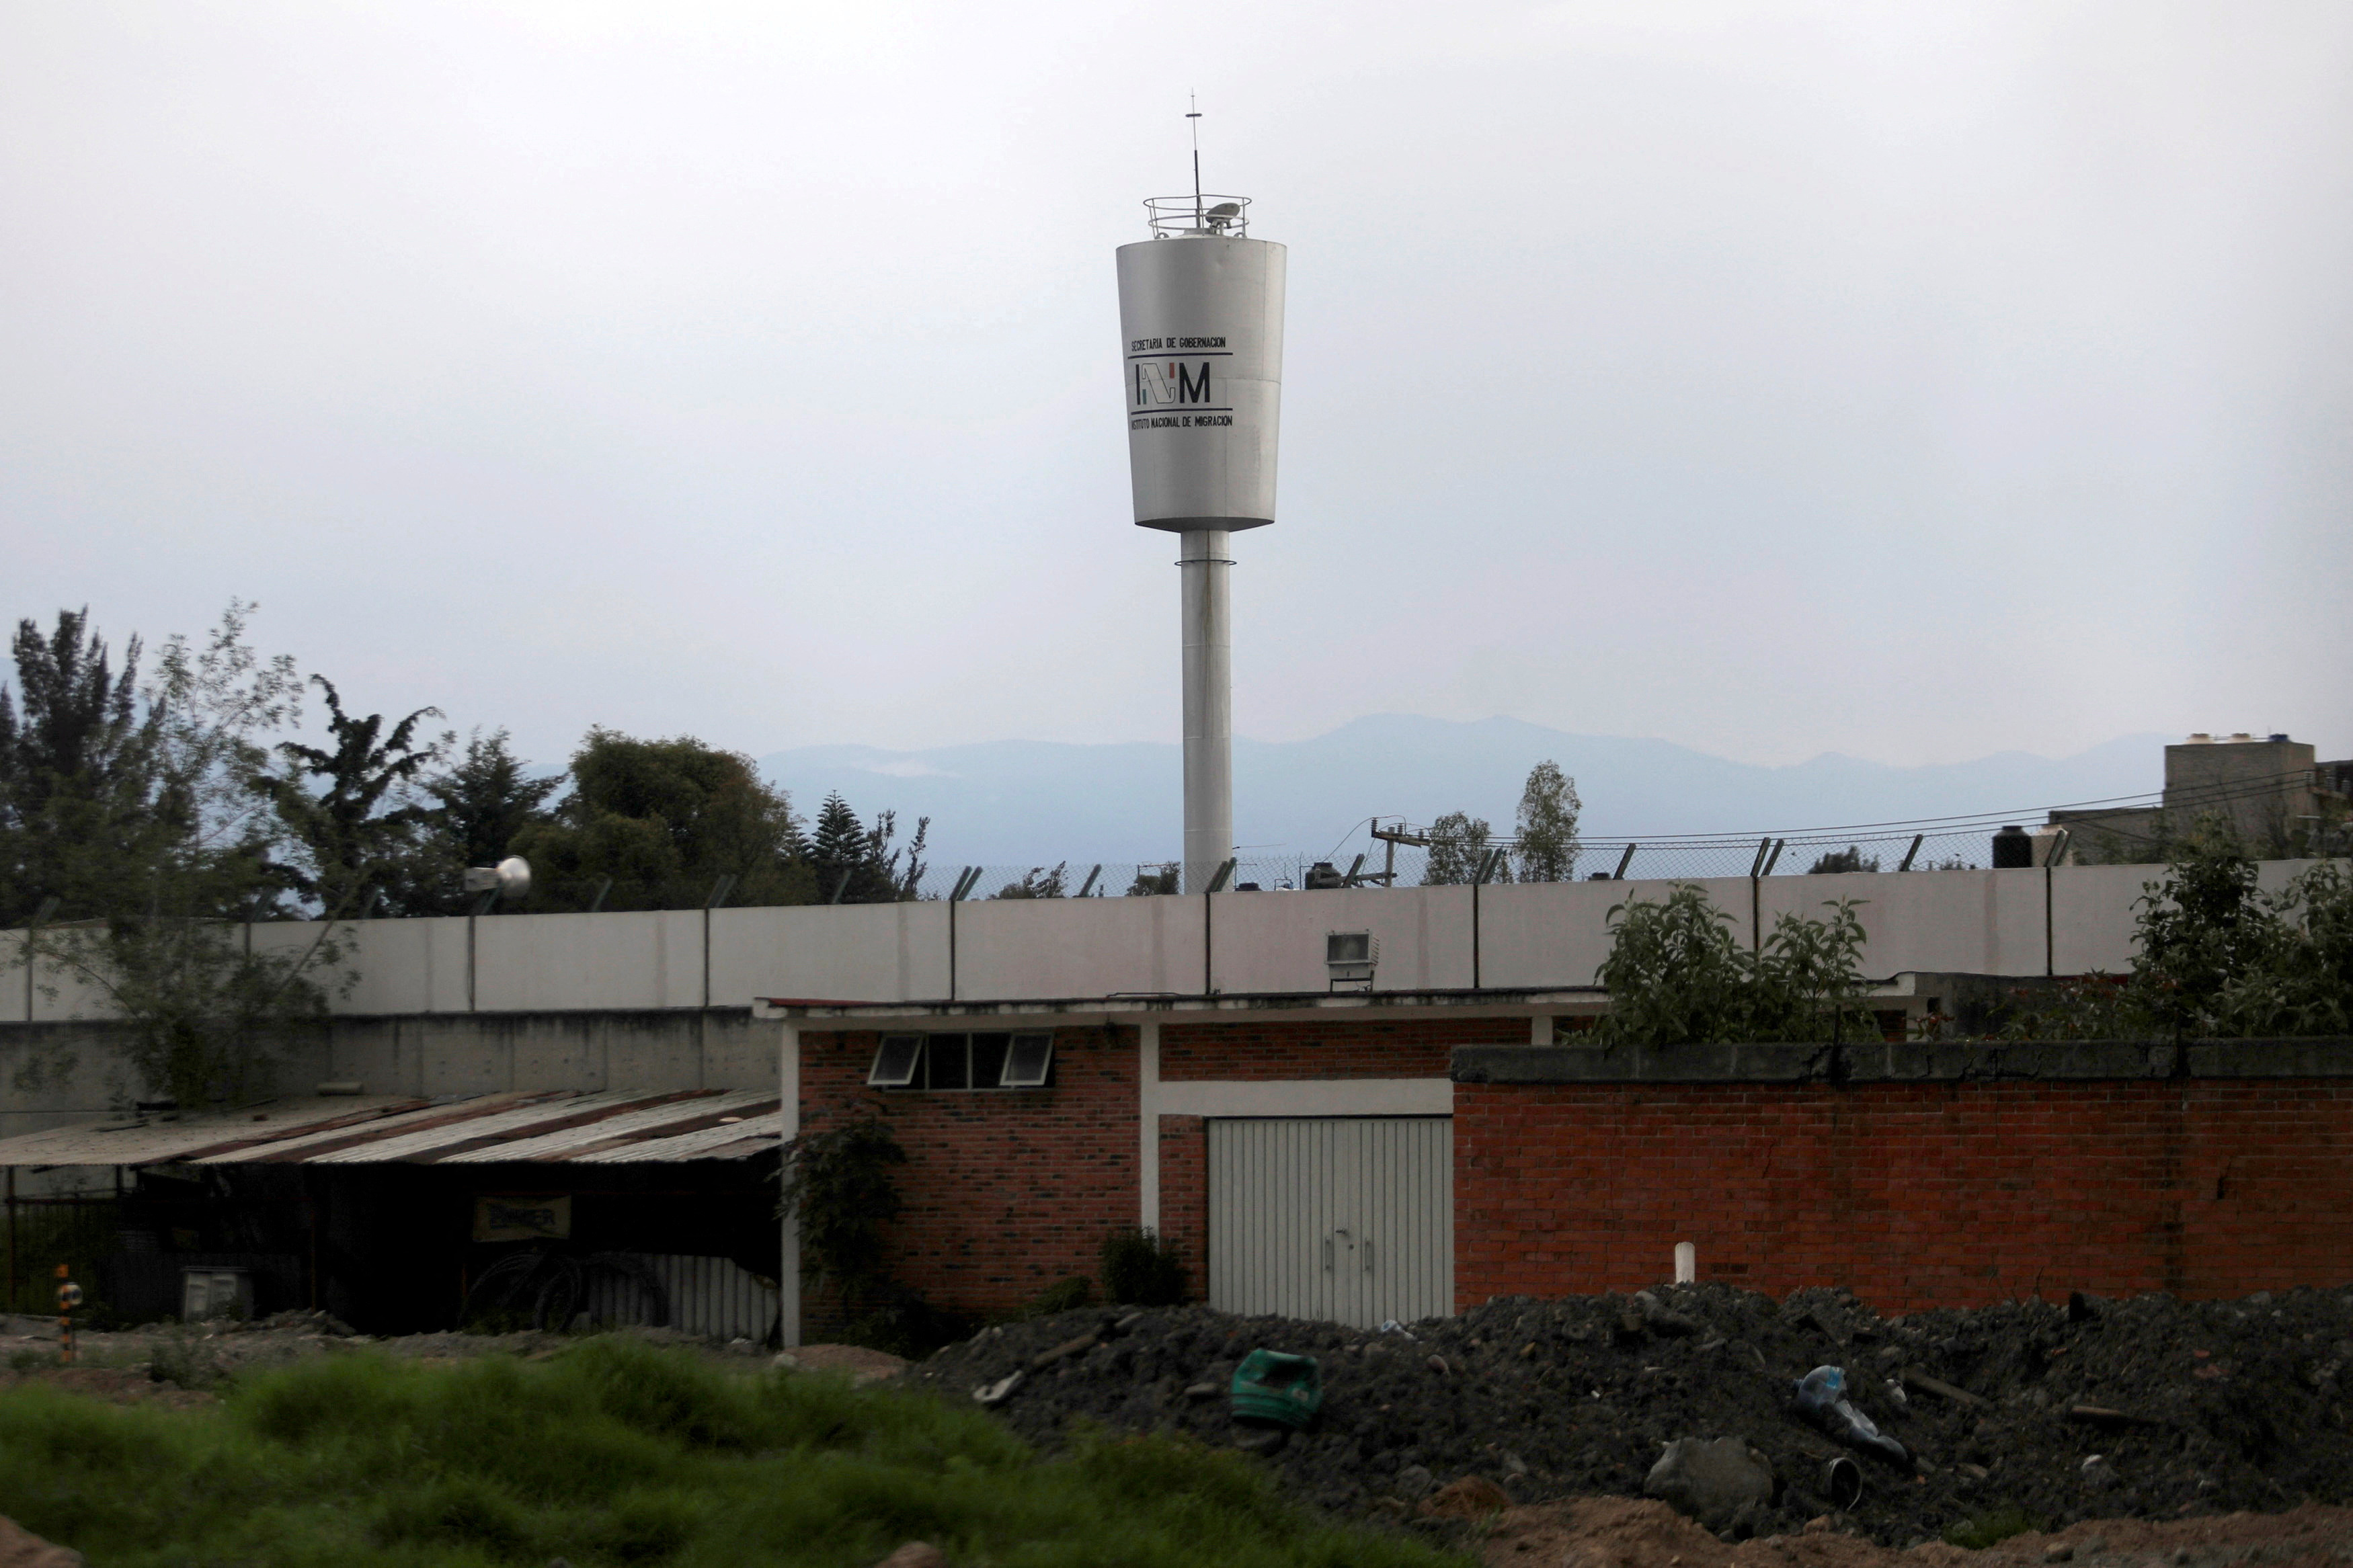 103 menores no acompañados encontrados en un tráiler abandonado en México, dice el gobierno